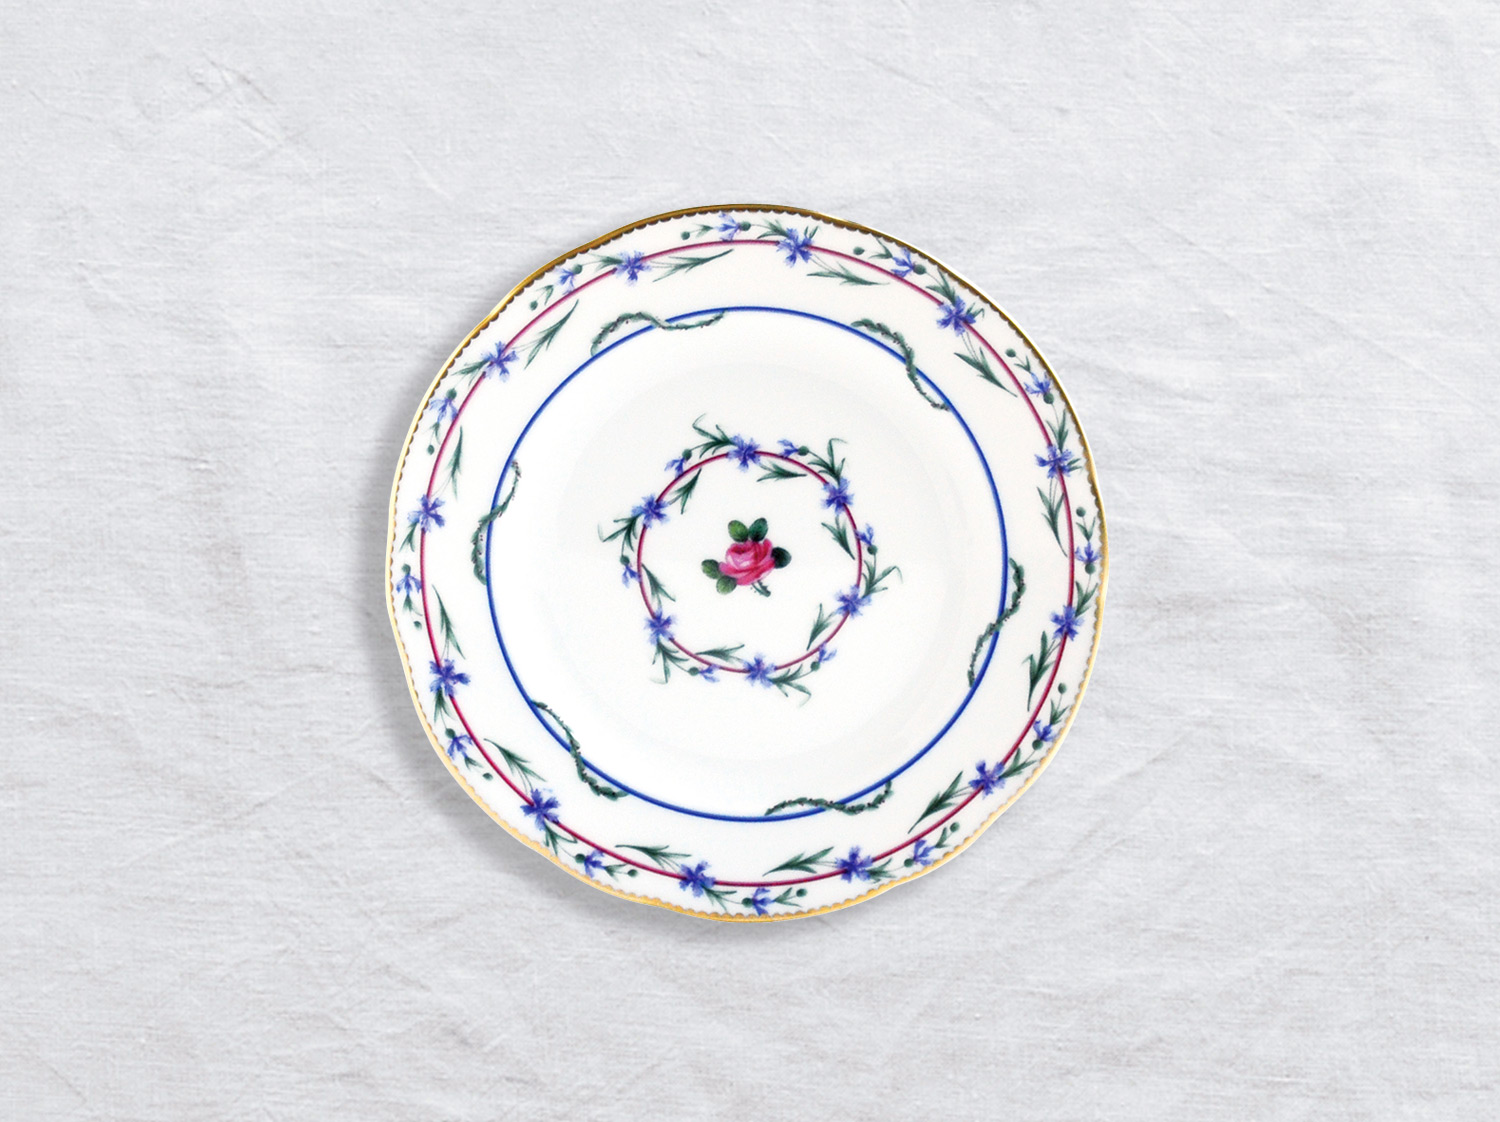 Assiette à pain 16 cm en porcelaine de la collection Gobelet du roy Bernardaud